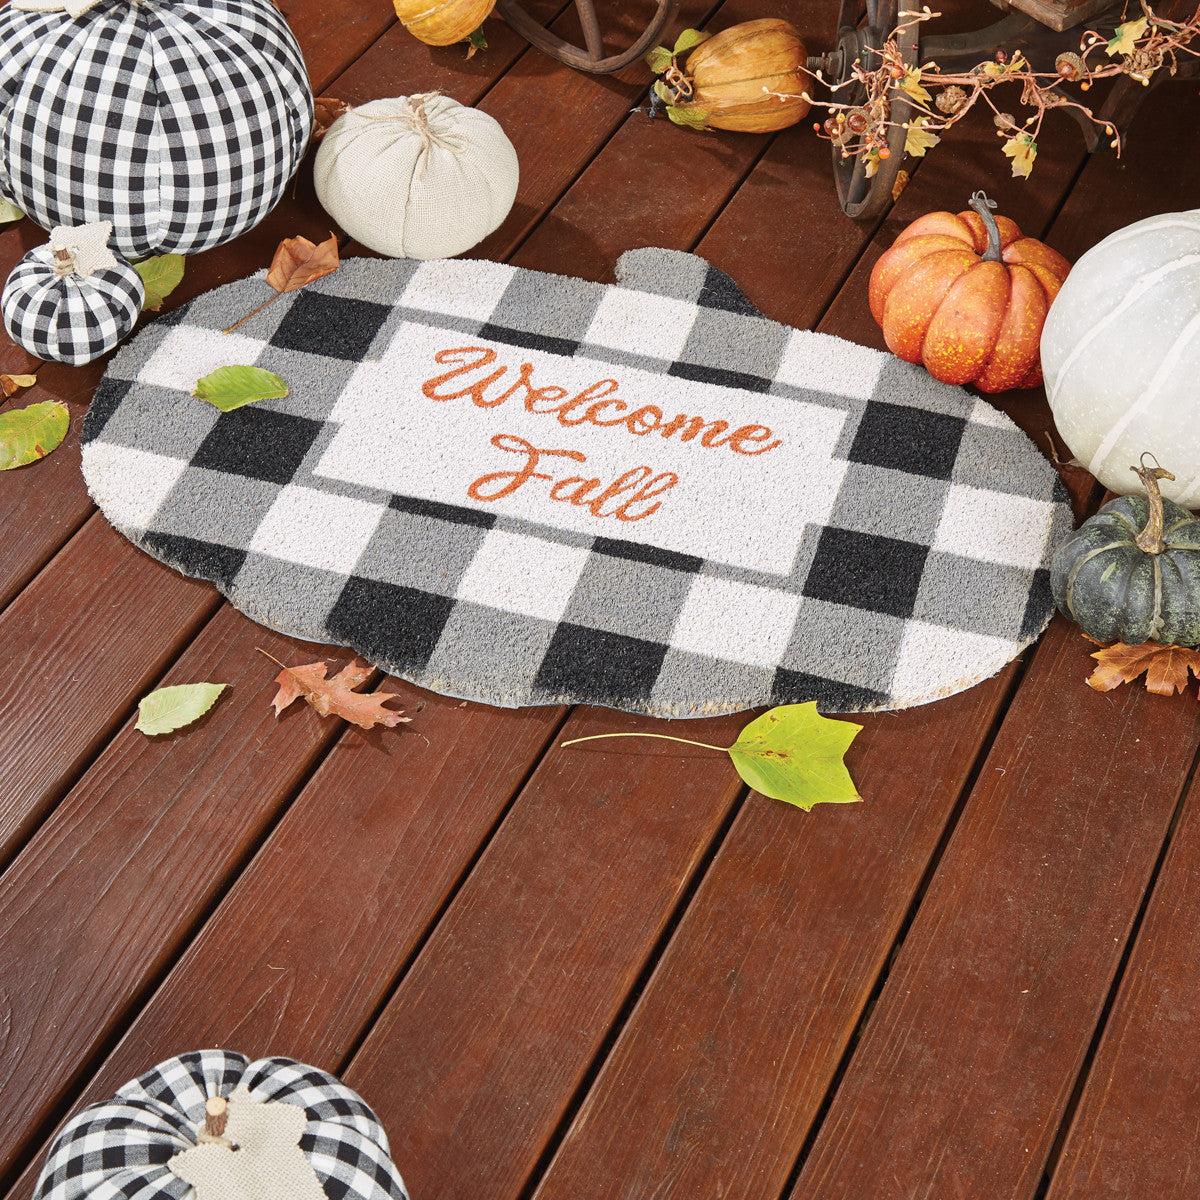 Welcome Fall Doormat - Park Designs